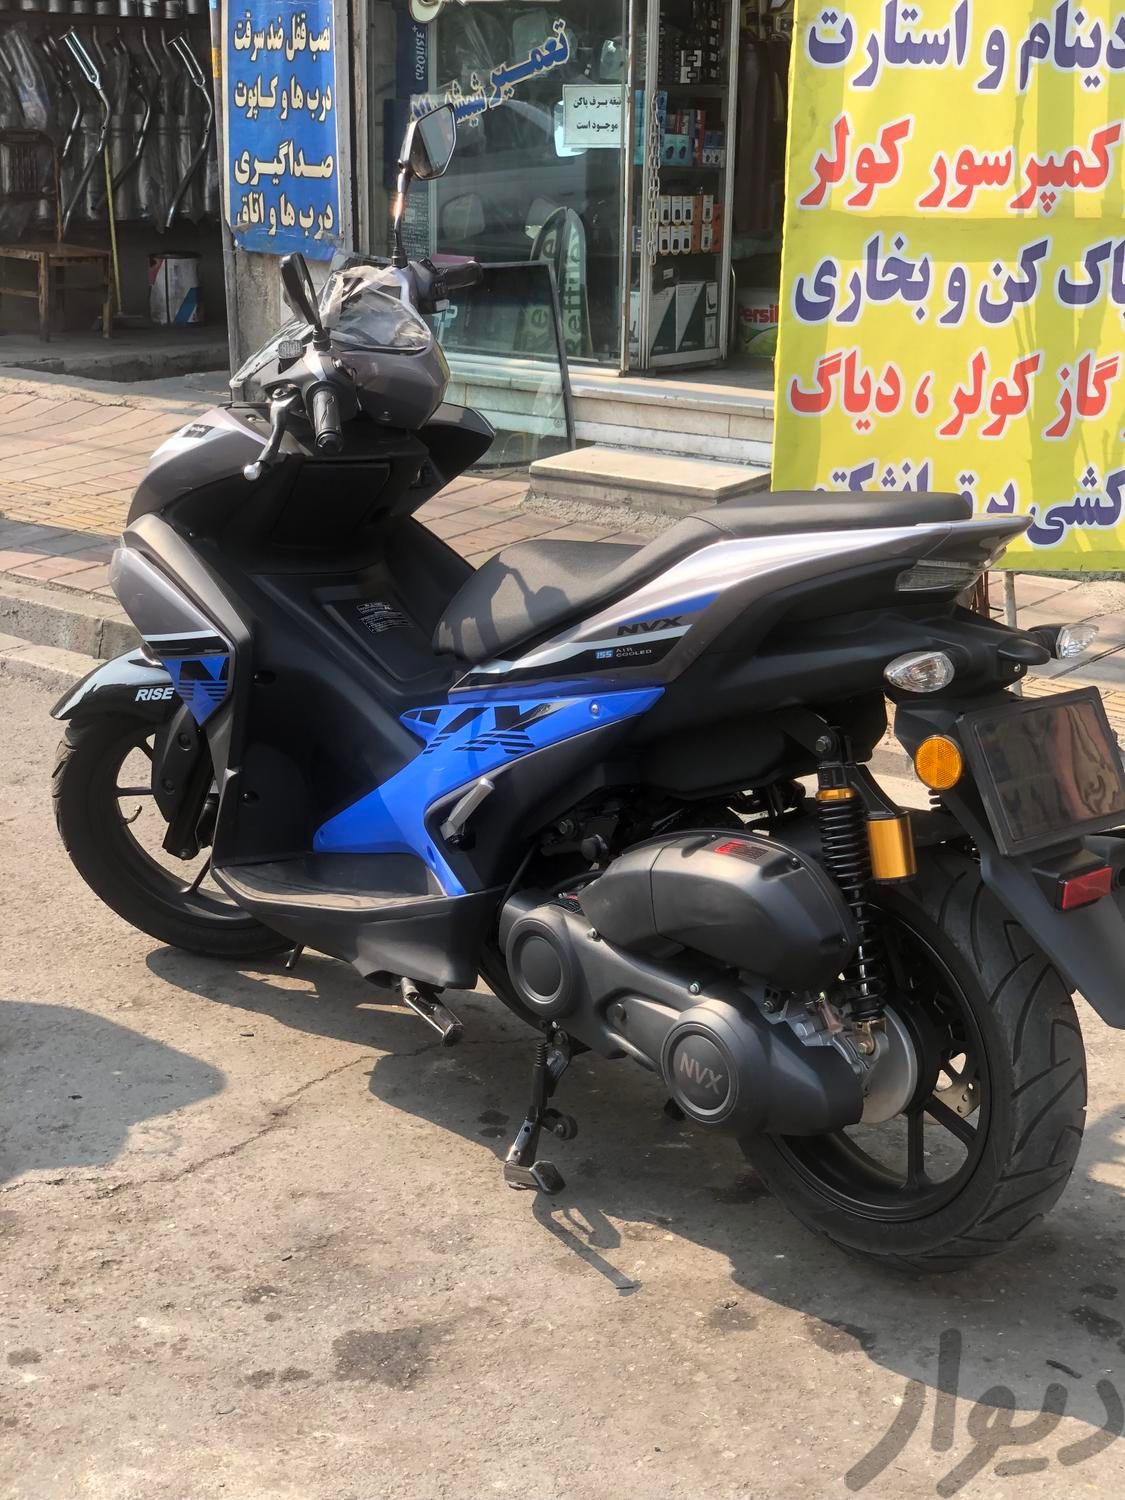 موتور طرح آیروکس کبیر|موتورسیکلت|تهران, امام سجاد(ع)|دیوار